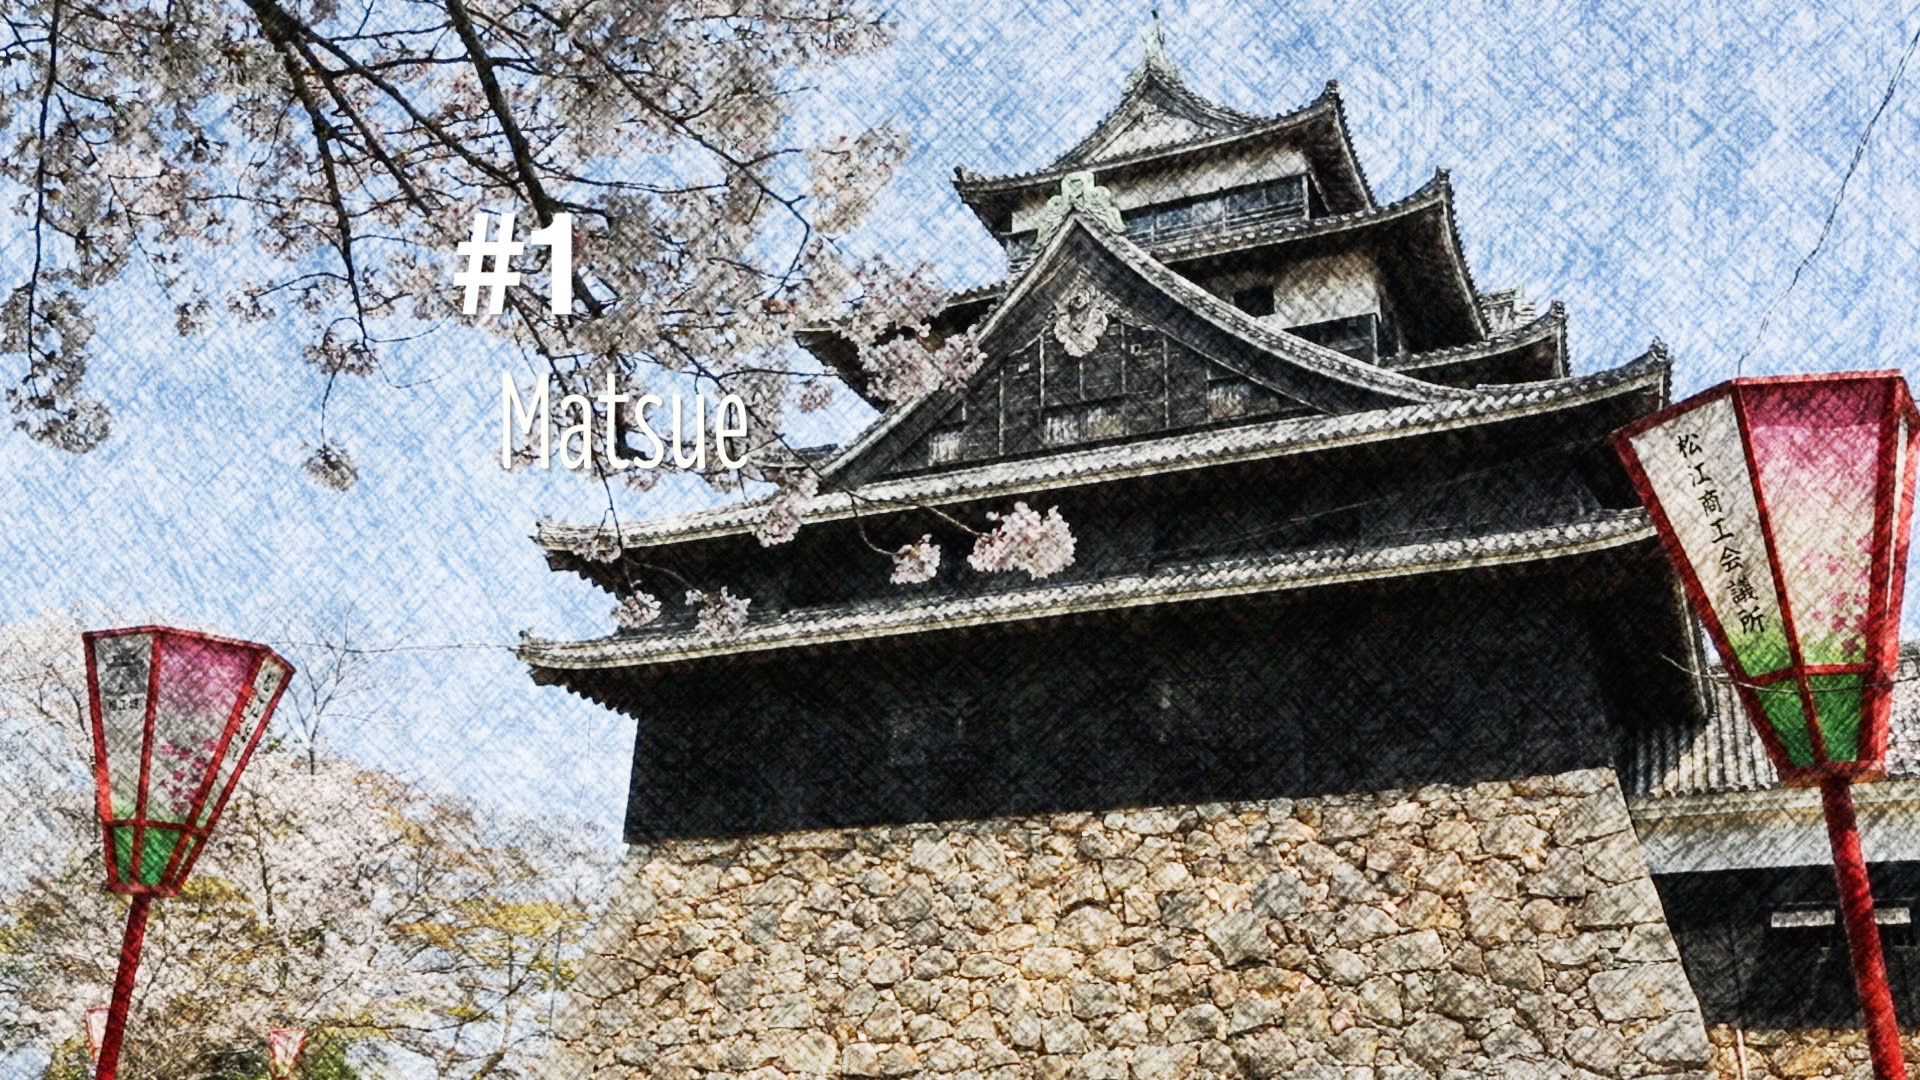 Le château de Matsue